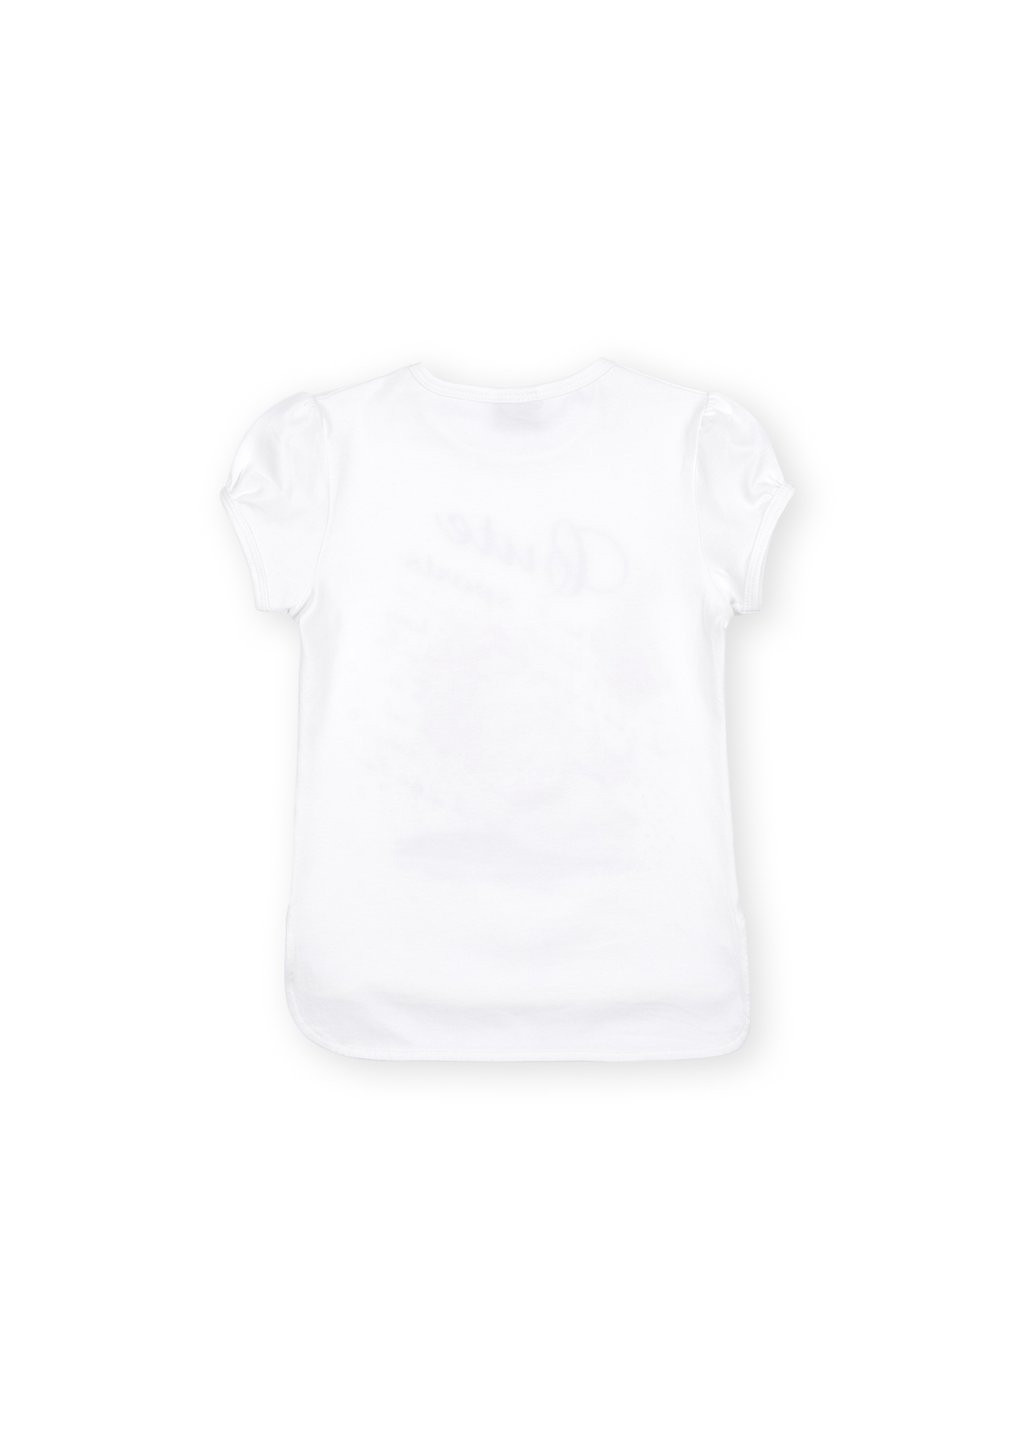 Комбинированная футболка детская с кедом (8295-116g-gray) Breeze